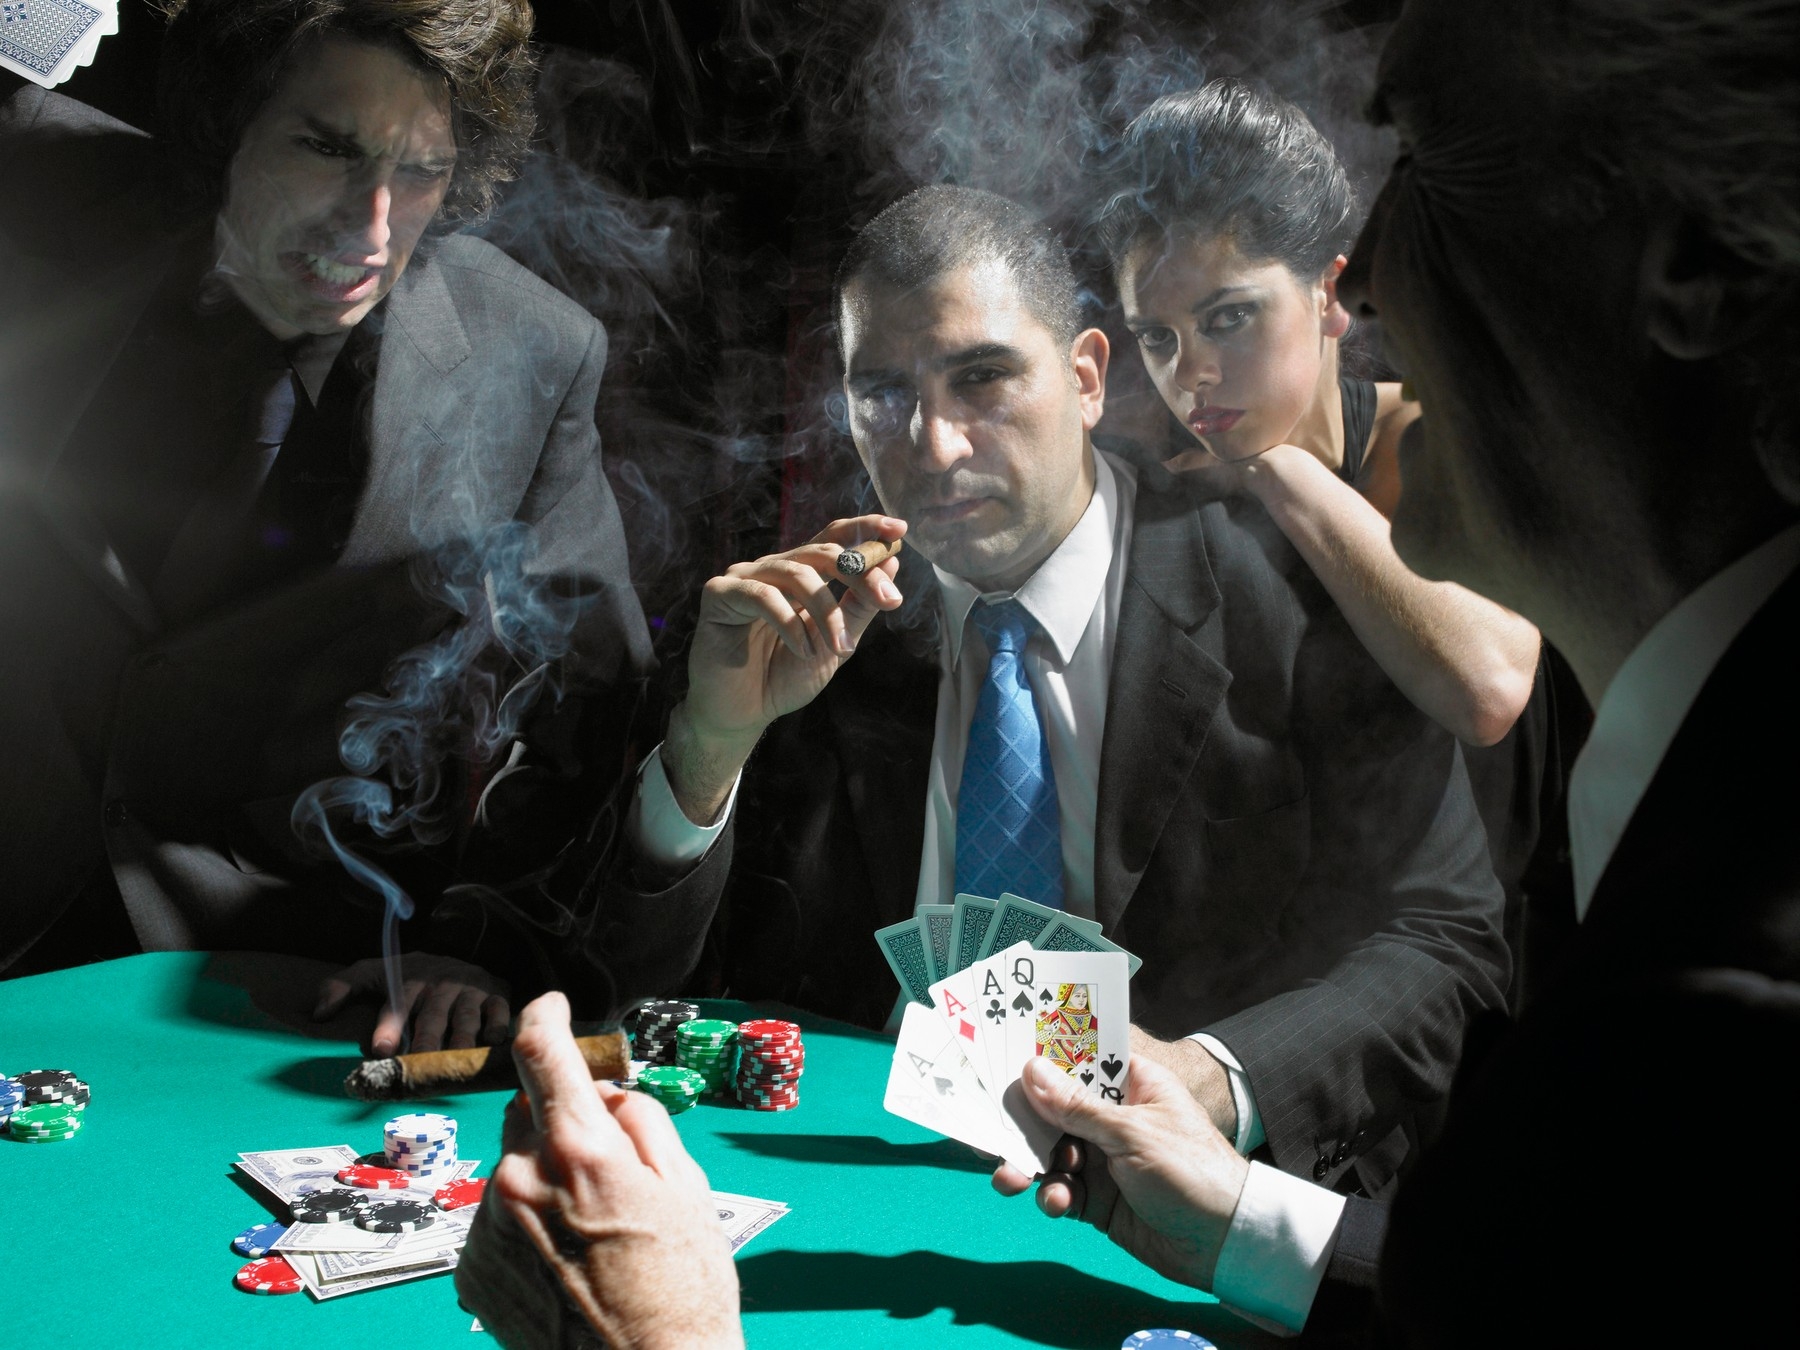 Игра в карты один игрок. Мафия Покер / Mafia Poker. Мафиози казино. Гангстеры в казино. Мафиози за столом.